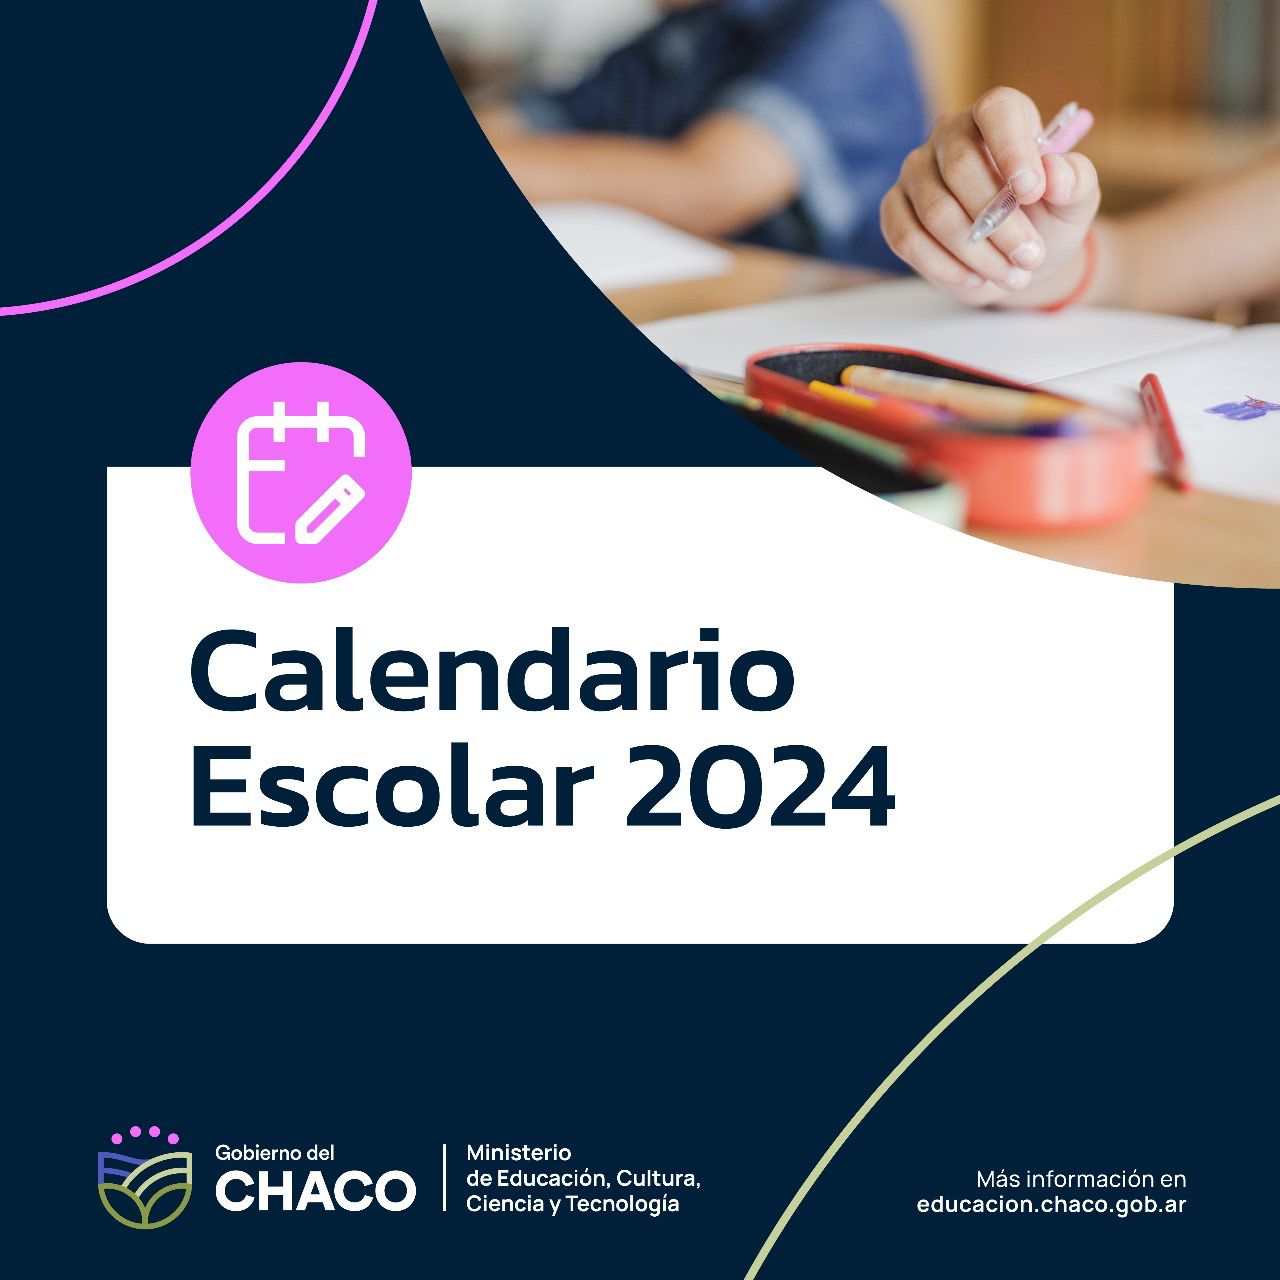 EDUCACIÓN CONSTRUYE EL CALENDARIO ESCOLAR 2024 DESCENTRALIZADO